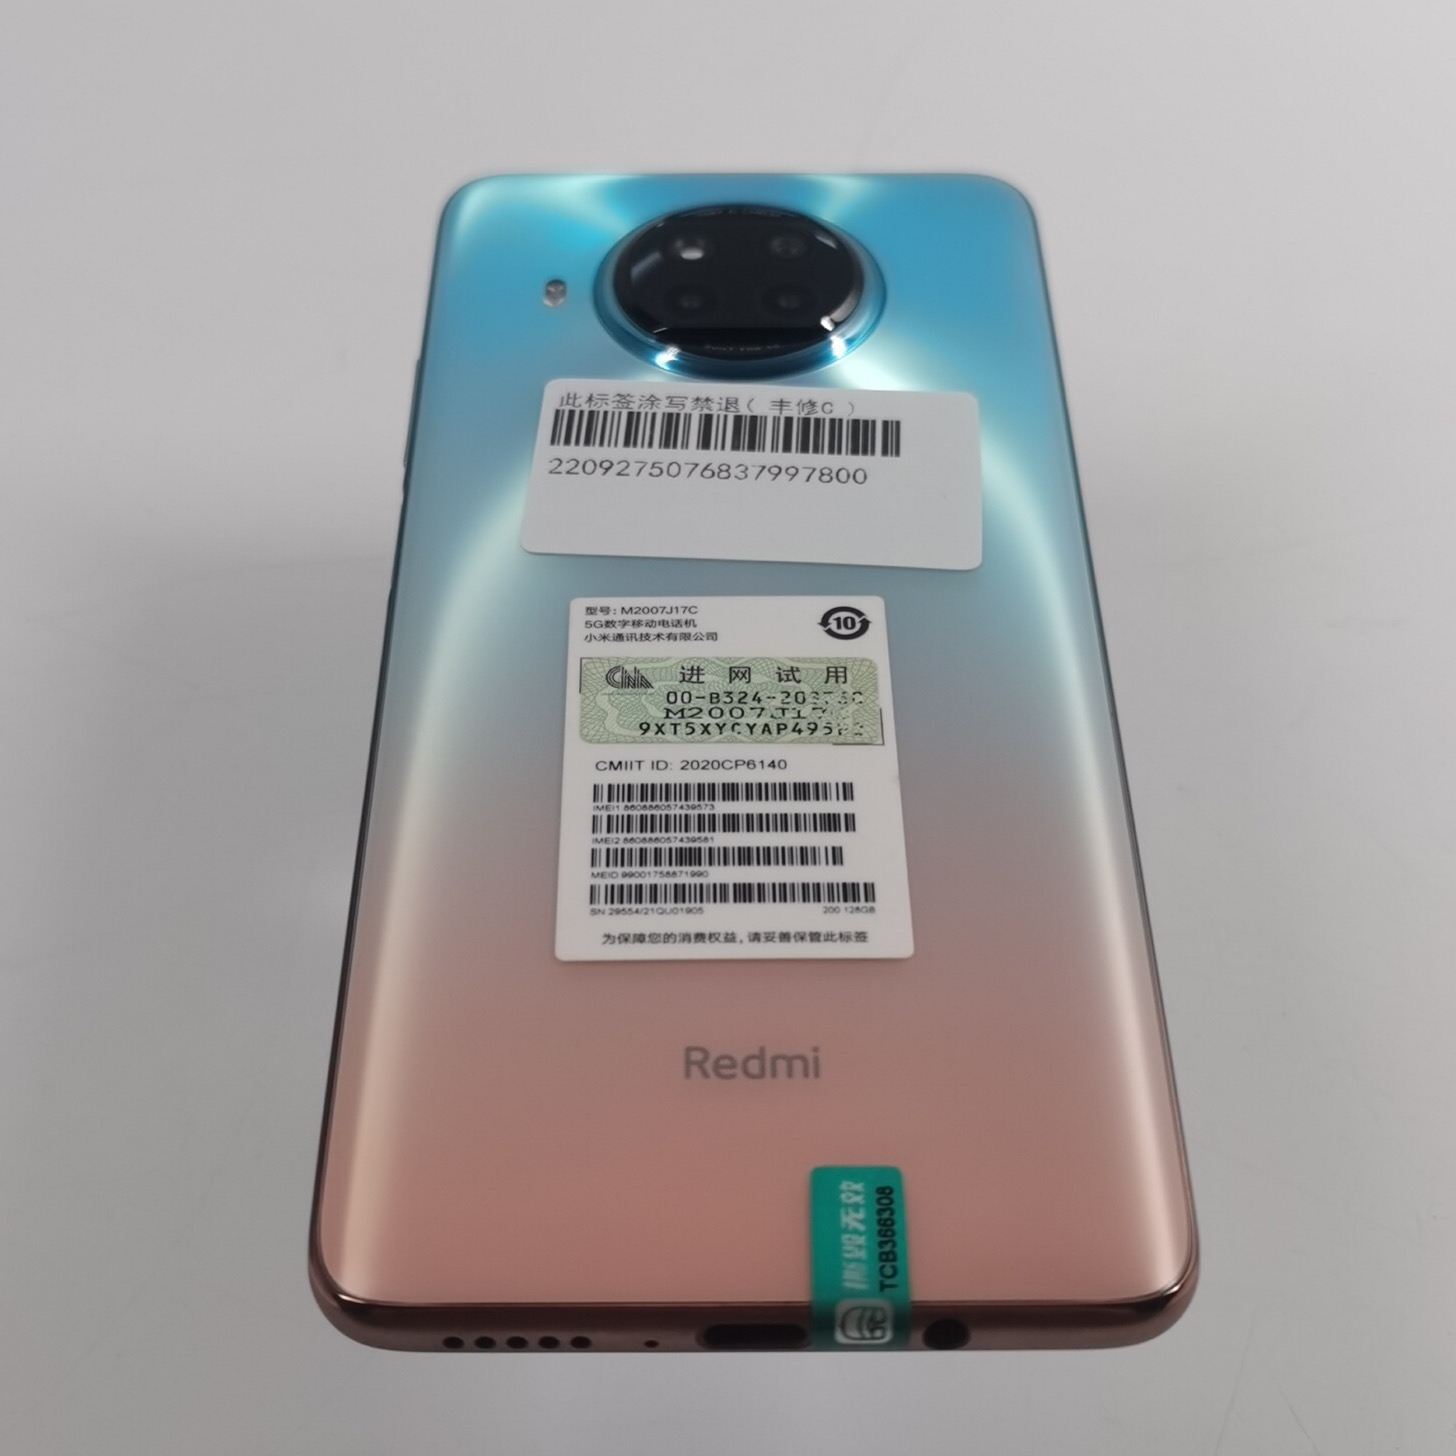 小米【Redmi Note 9 Pro 5G】5G全网通 湖光秋色 8G/128G 国行 95新 